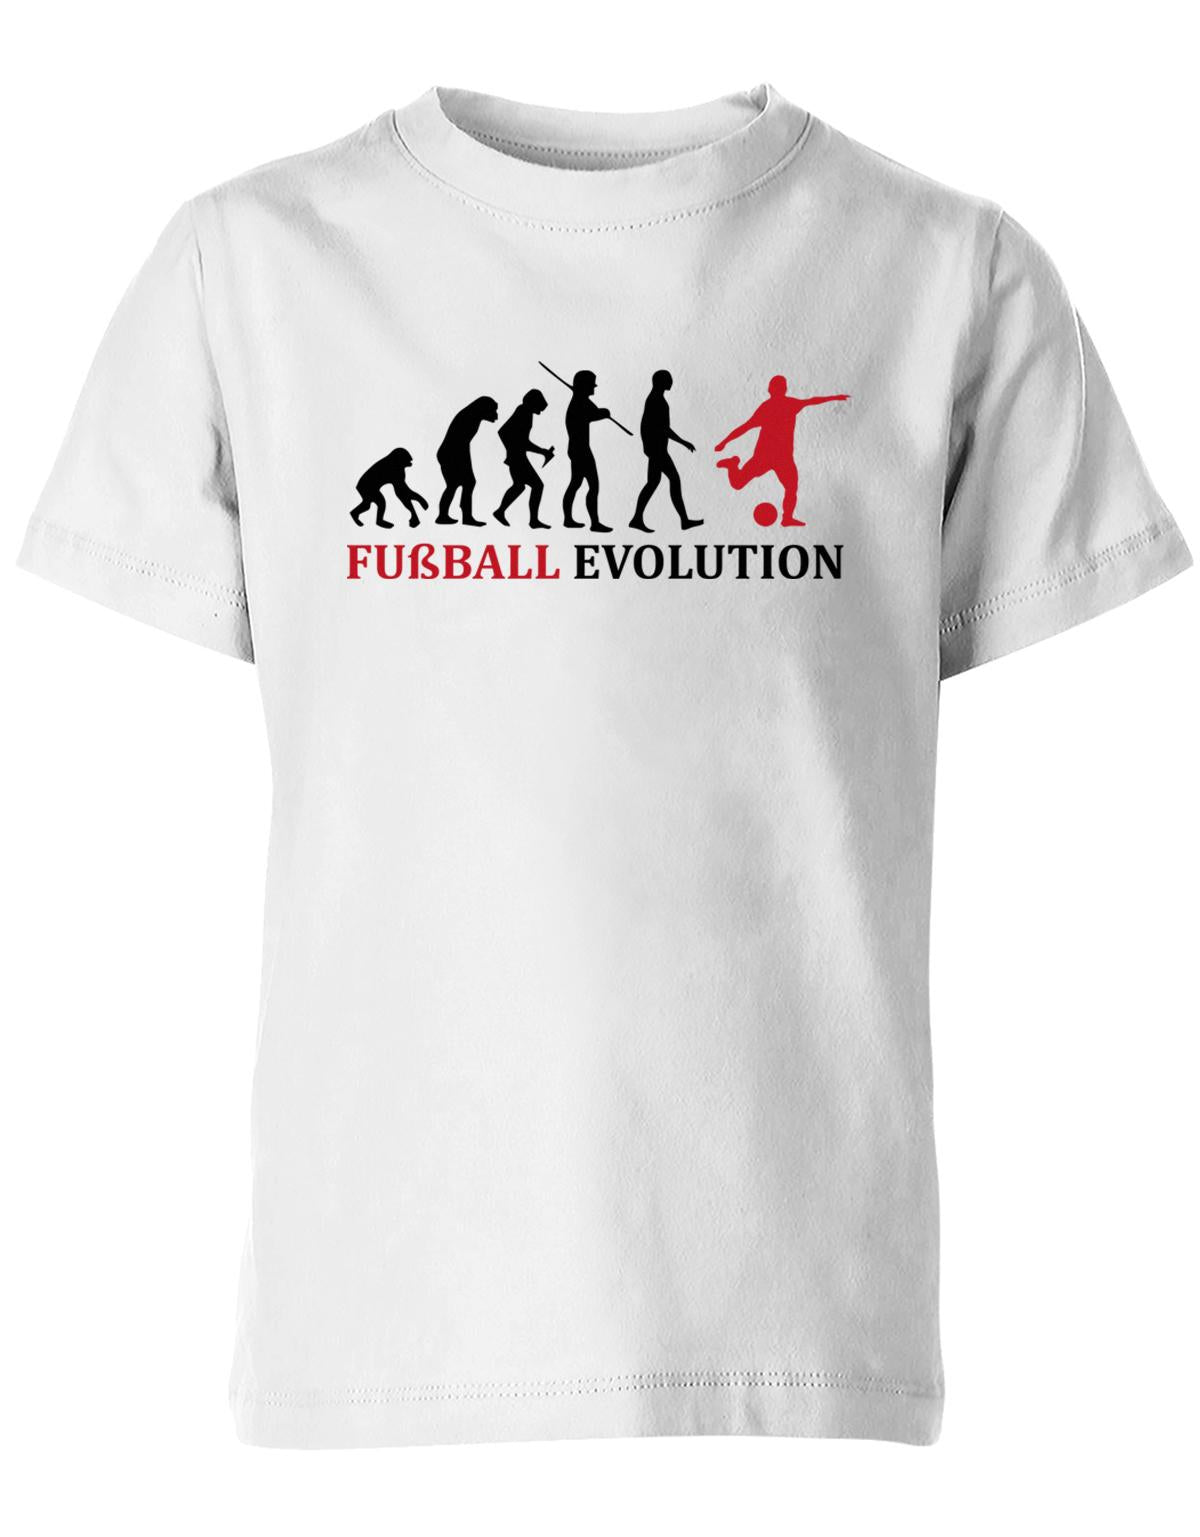 Fussball-Evolution-Kinder-Shirt-Weiss-Rot